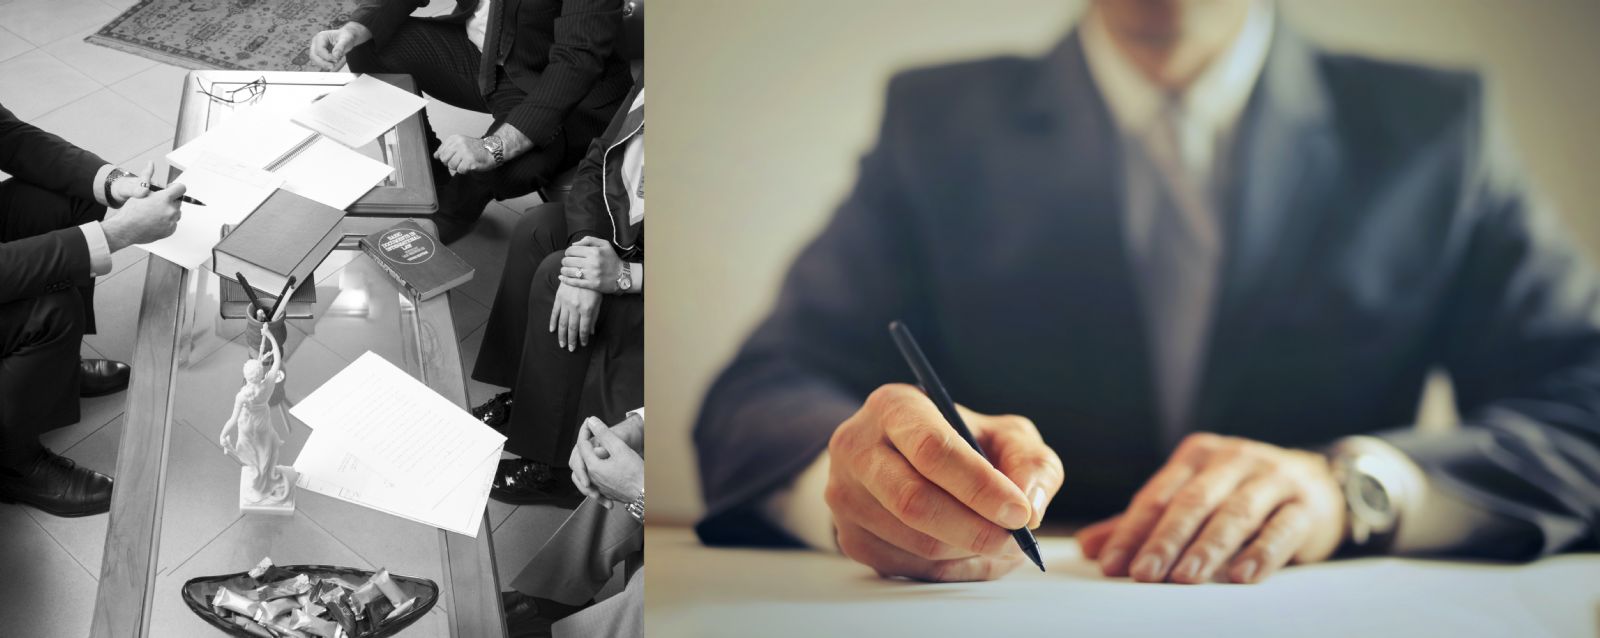 با تکیه بر ساعتها کار حقوقی گروهی و حرفه ای، قراردادهای تجاری خود را با آسودگی خاطر امضاء کنید